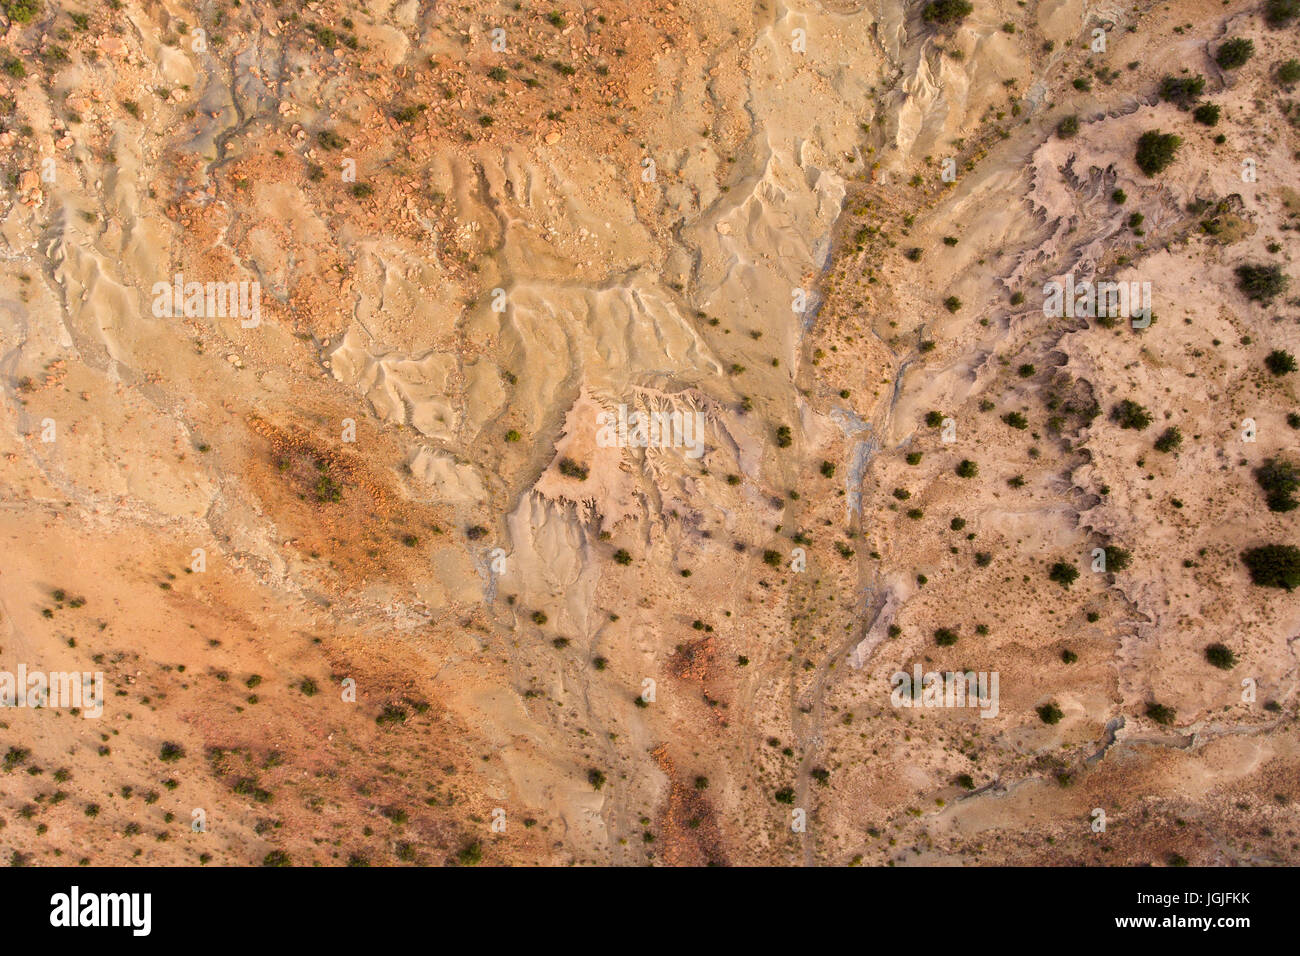 Vista aérea de una grave erosión del suelo en una región árida de Sudáfrica Foto de stock